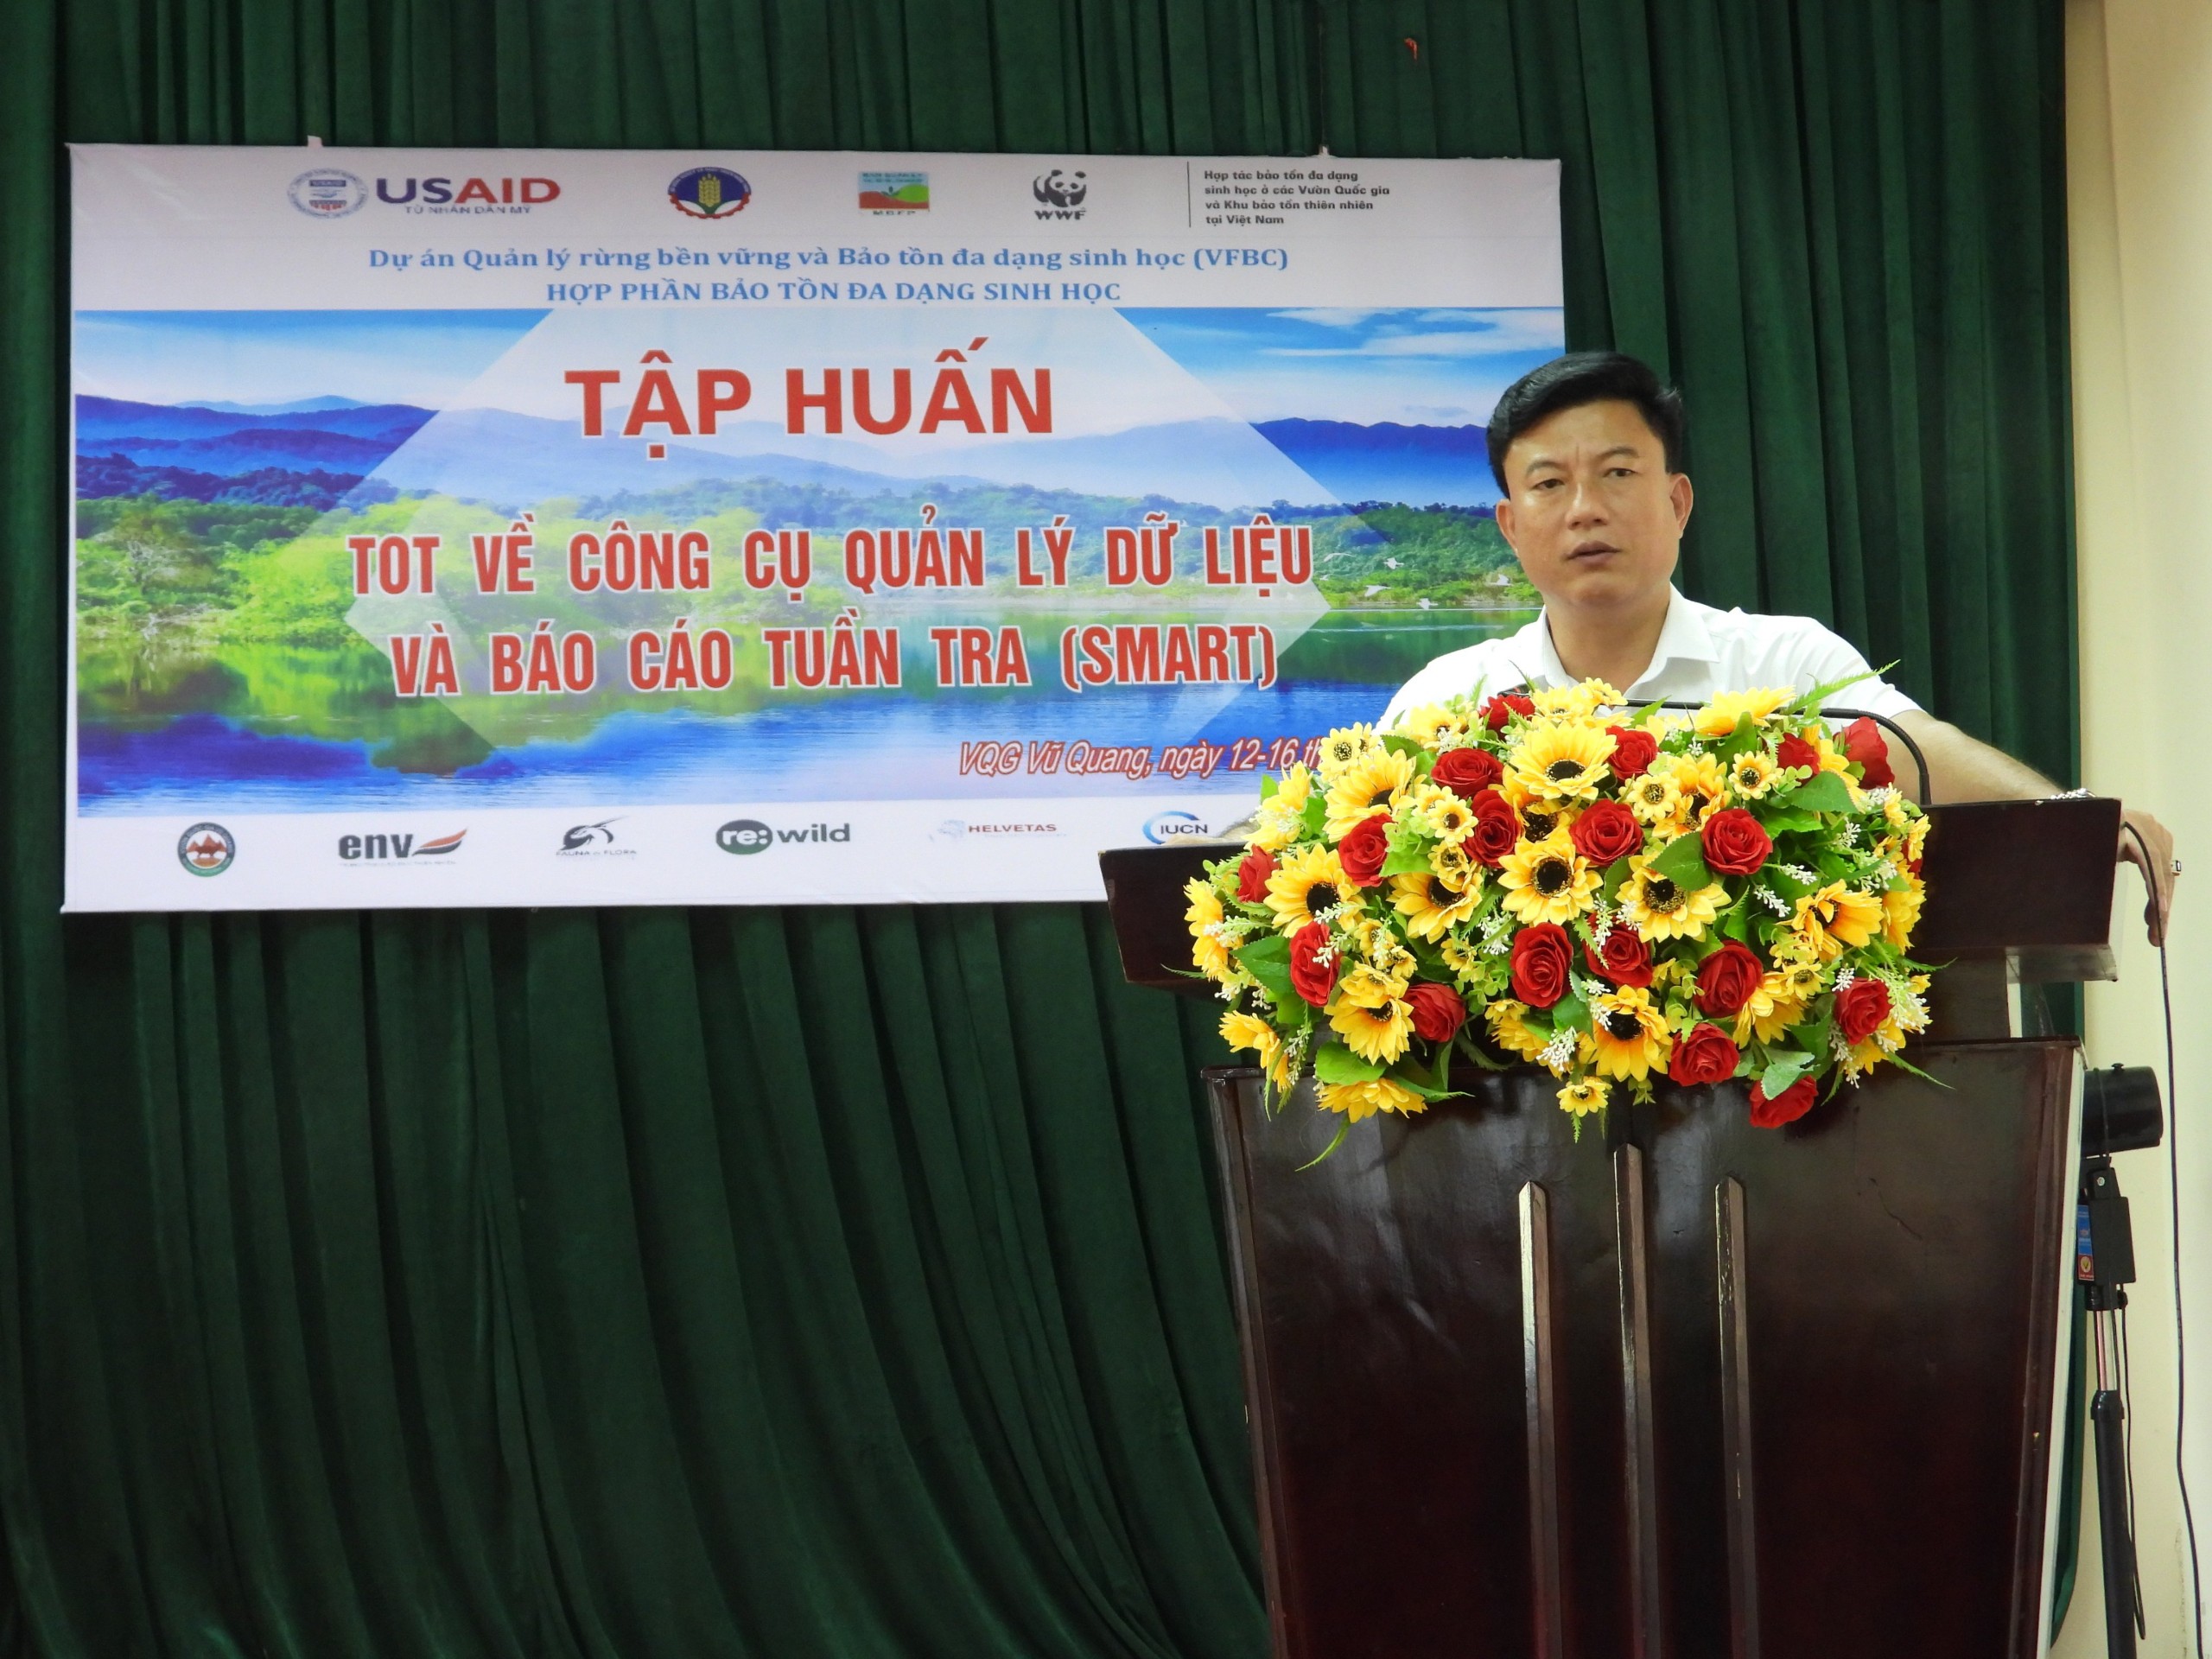 Vườn Quốc gia Vũ Quang tổ chức hội nghị tập huấn sử dụng và quản lý hệ thống SMART trong tuần tra, truy quét bảo vệ rừng.